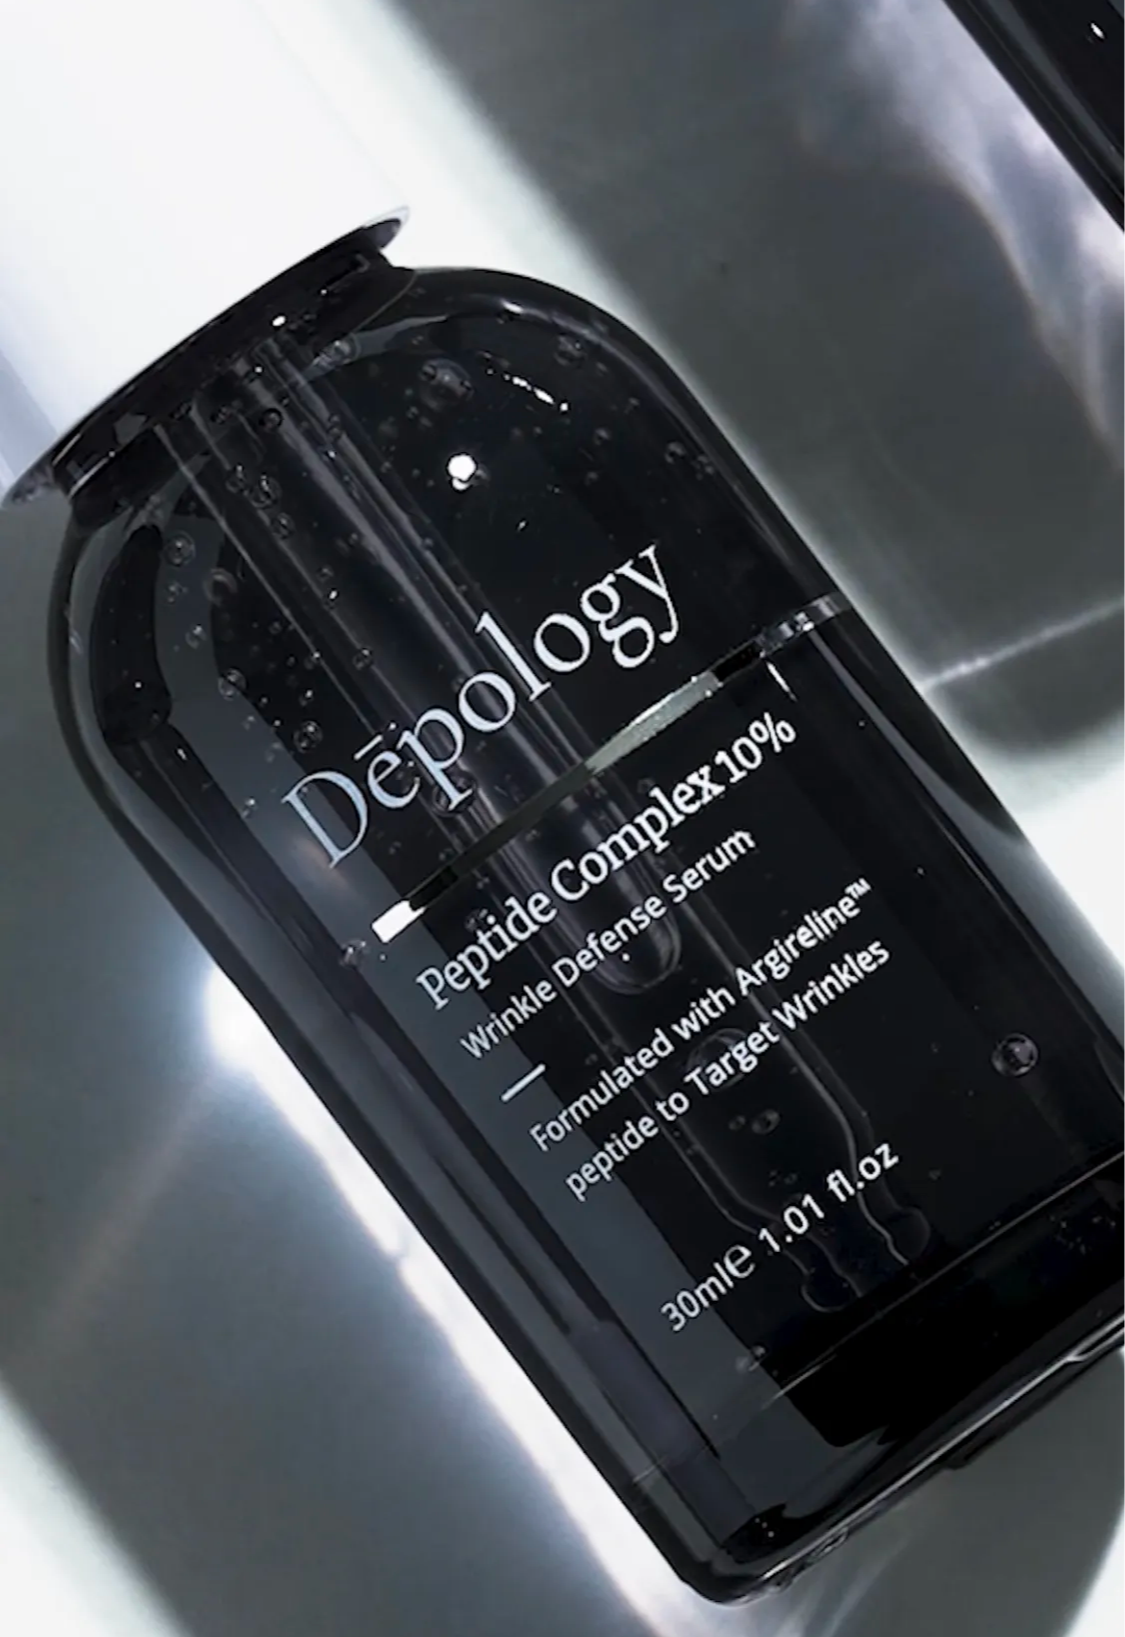 Depology Peptide complex grey slick bottles